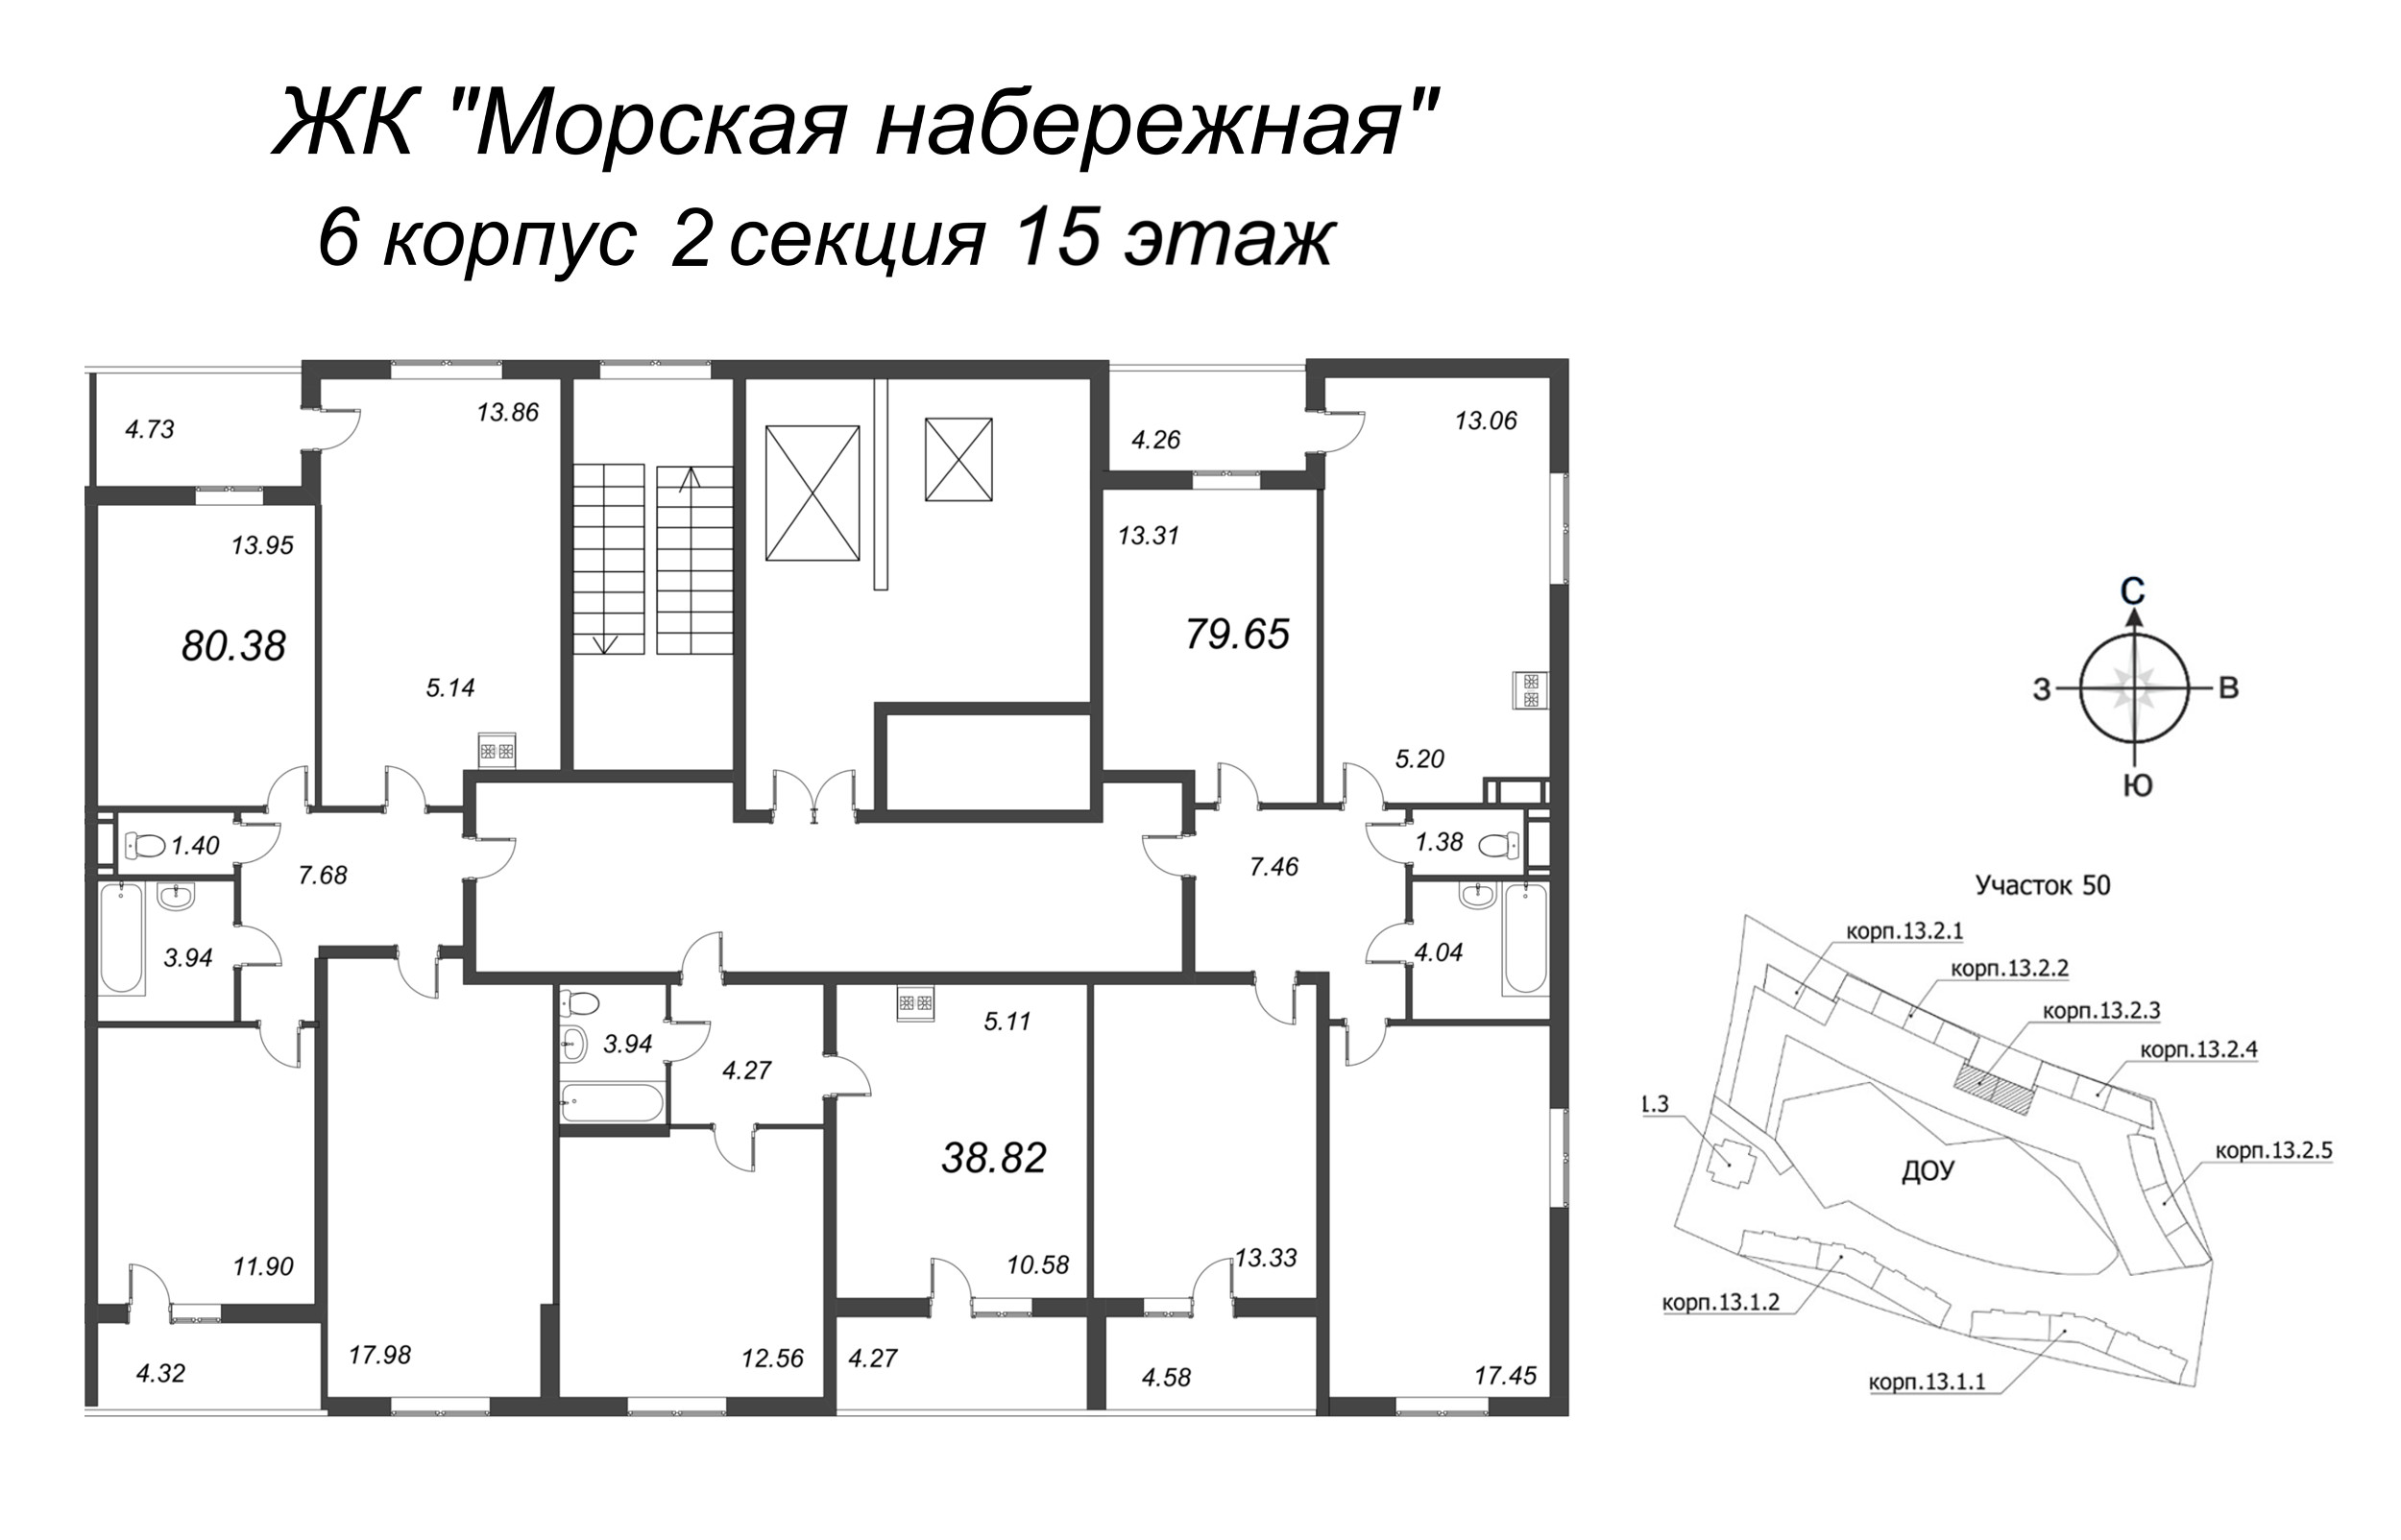 4-комнатная (Евро) квартира, 78.7 м² в ЖК "Морская набережная" - планировка этажа